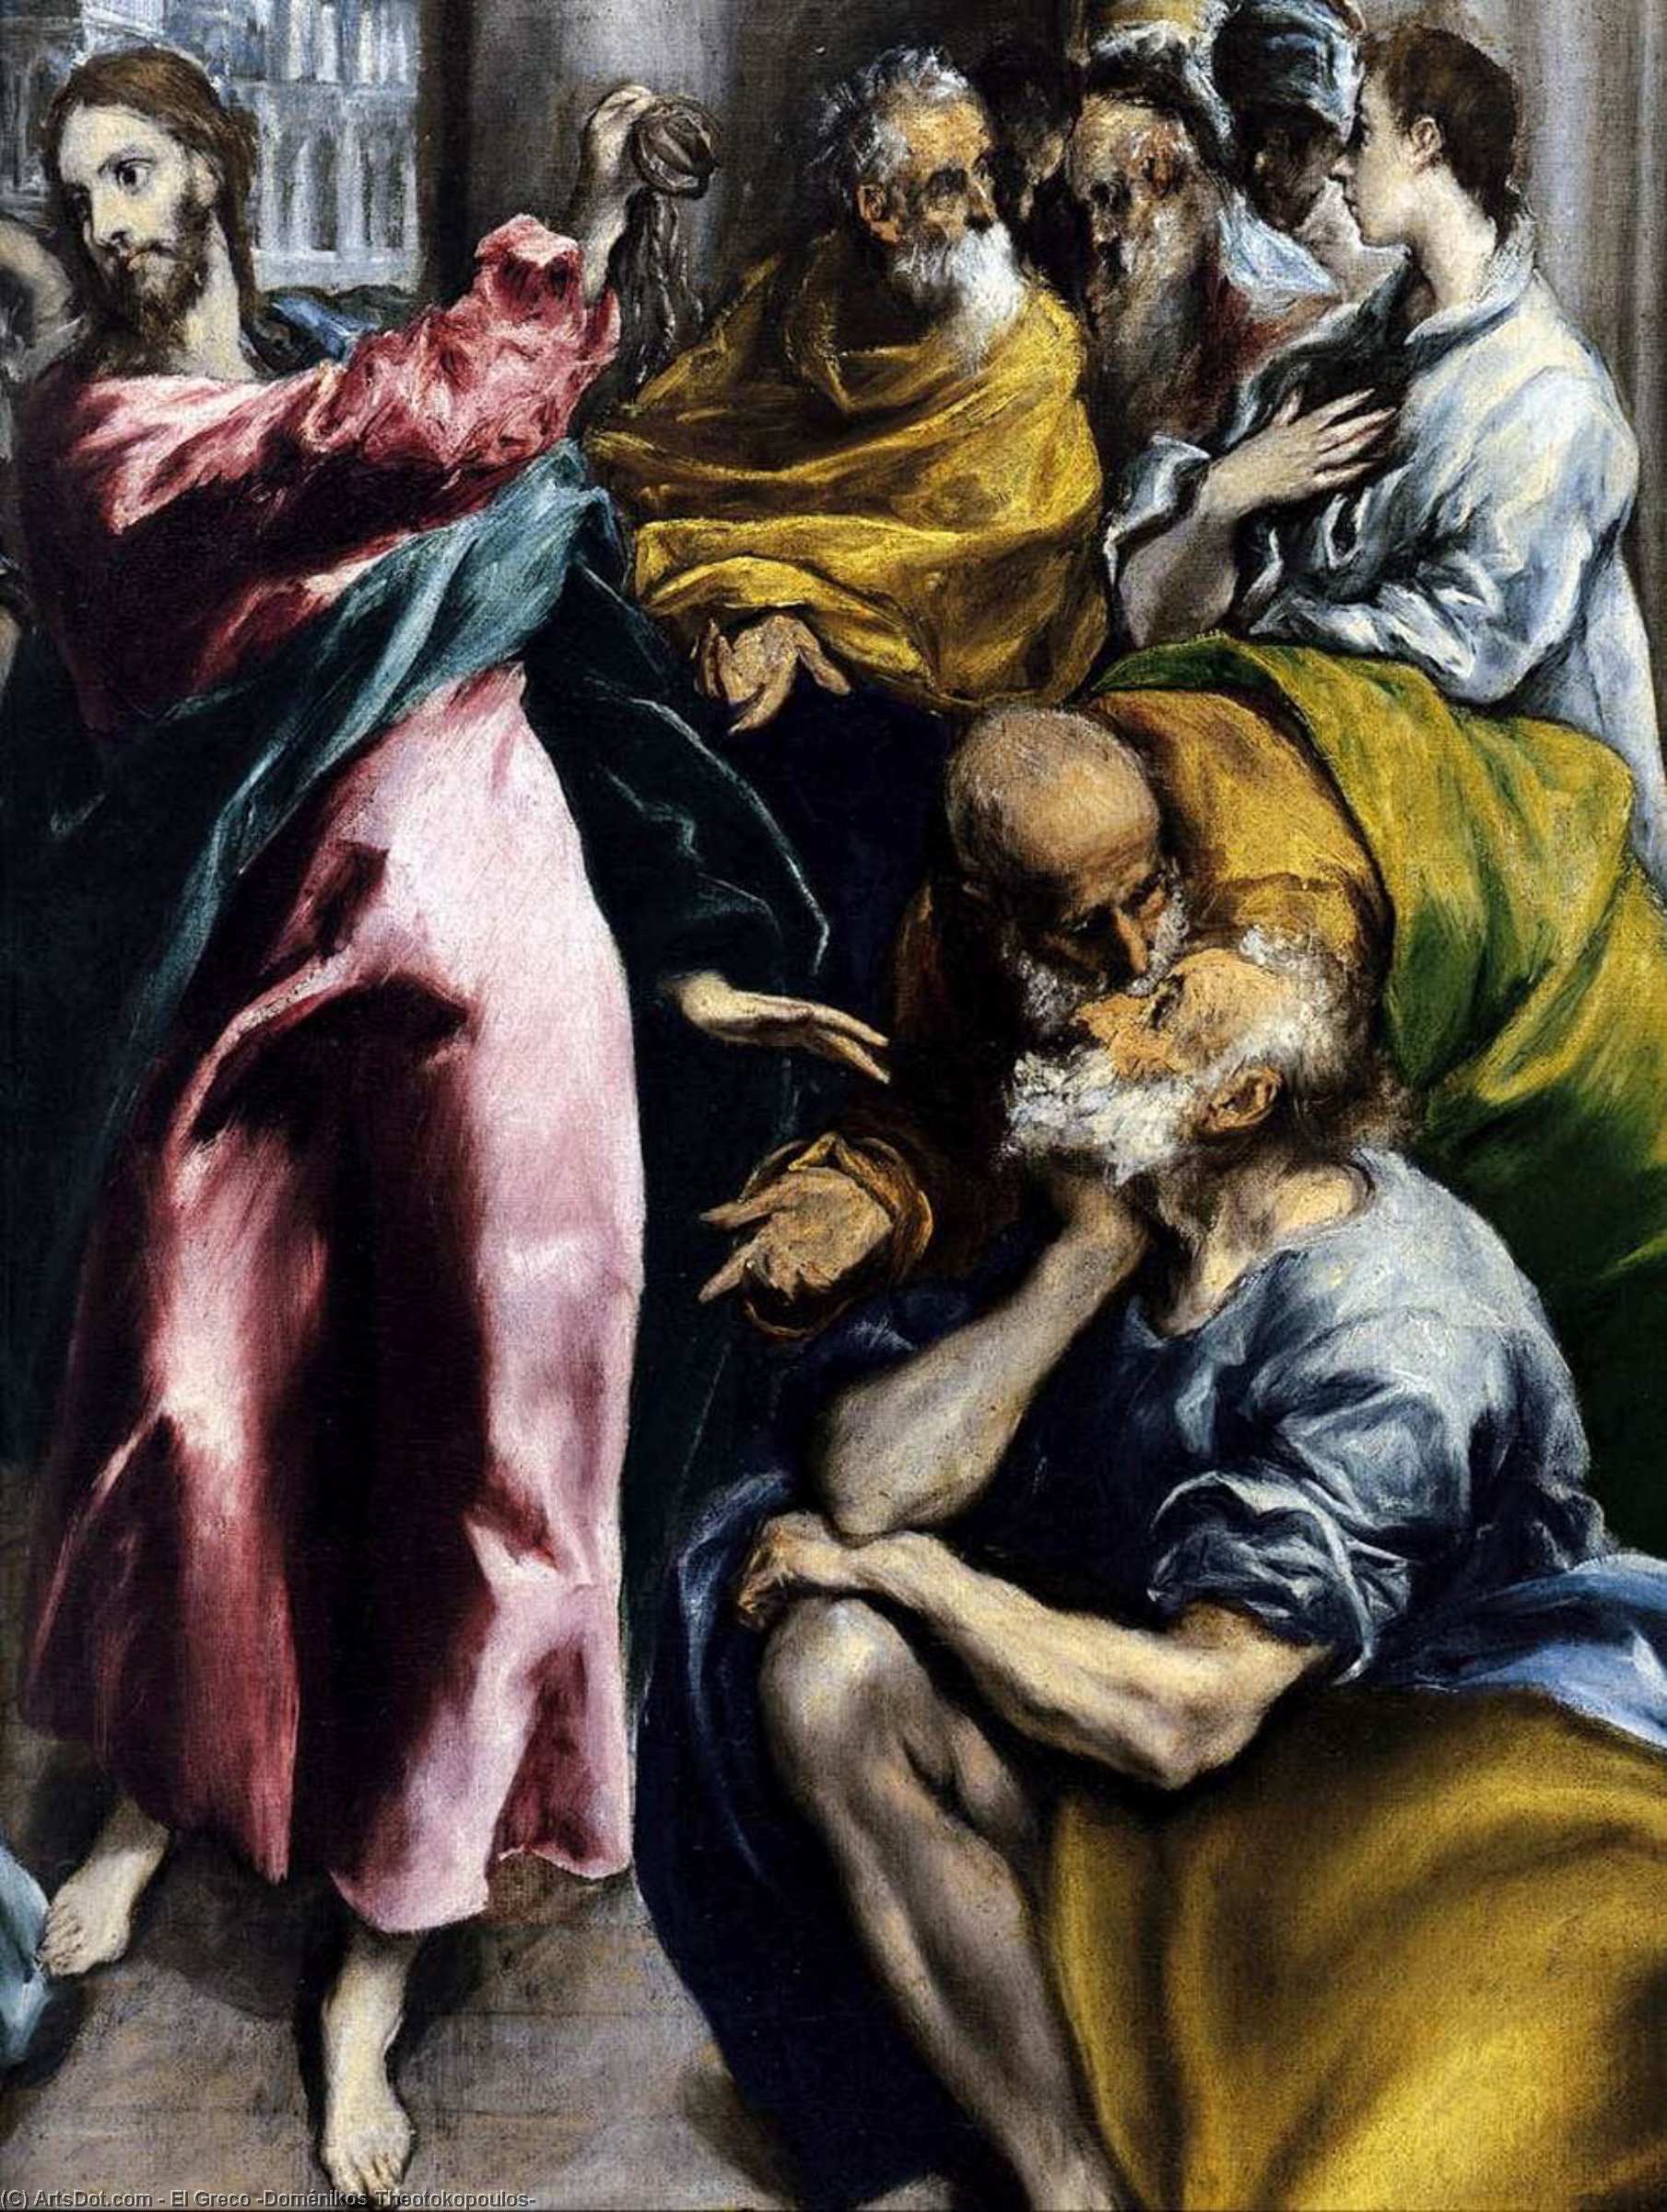 WikiOO.org - Enciclopédia das Belas Artes - Pintura, Arte por El Greco (Doménikos Theotokopoulos) - The Purification of the Temple (detail)